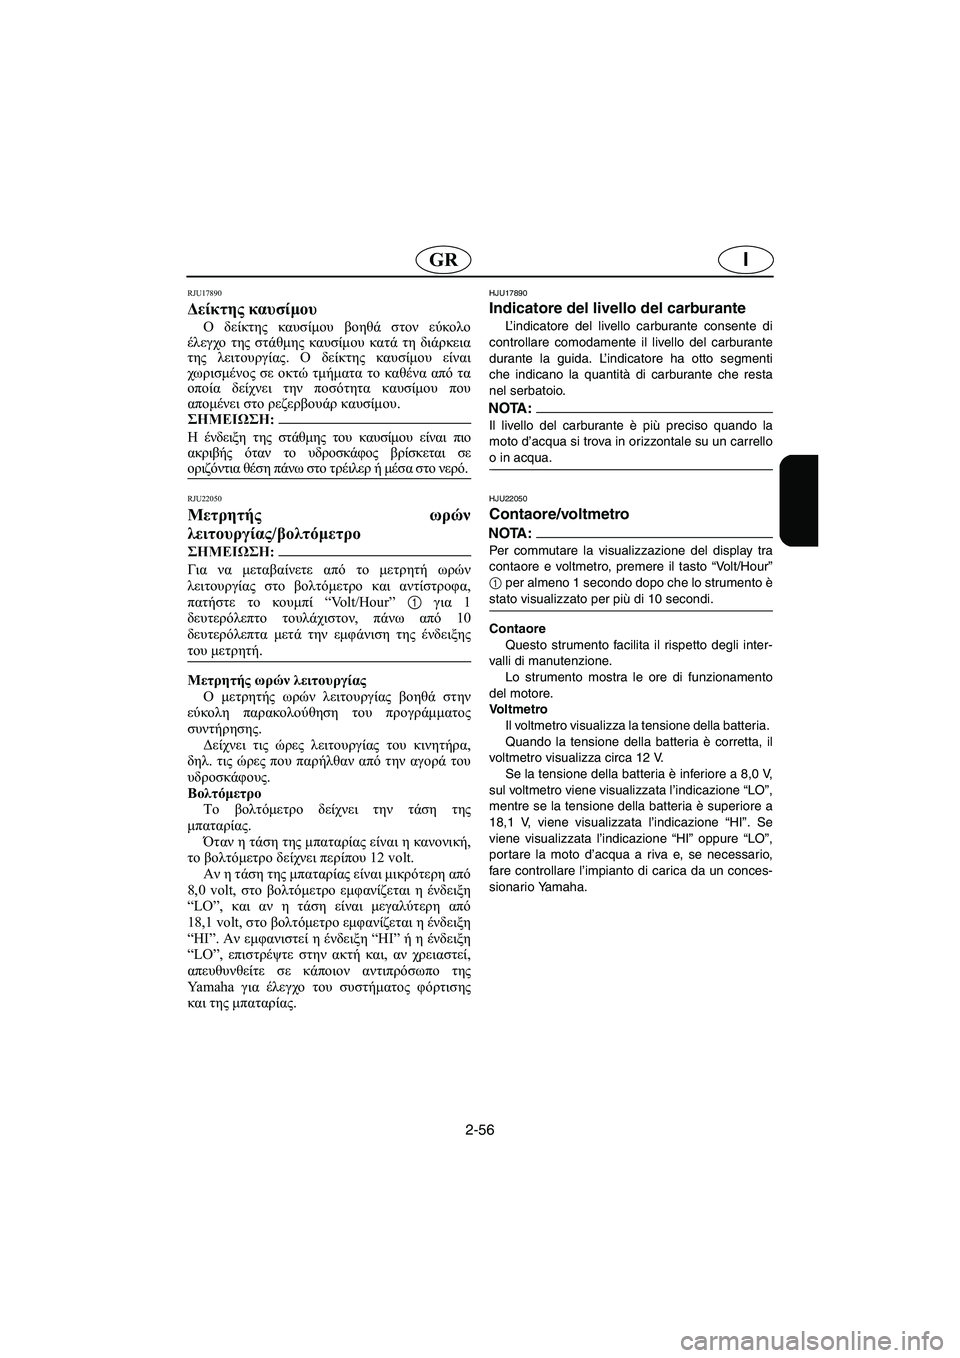 YAMAHA FX HO 2006  Manual de utilização (in Portuguese) 2-56
IGR
RJU17890 
Δείκτης καυσίμου  
Ο δείκτης καυσίμου βοηθά στον εύκολο
έλεγχο της στάθμης καυσίμου κατά τη διάρκε�